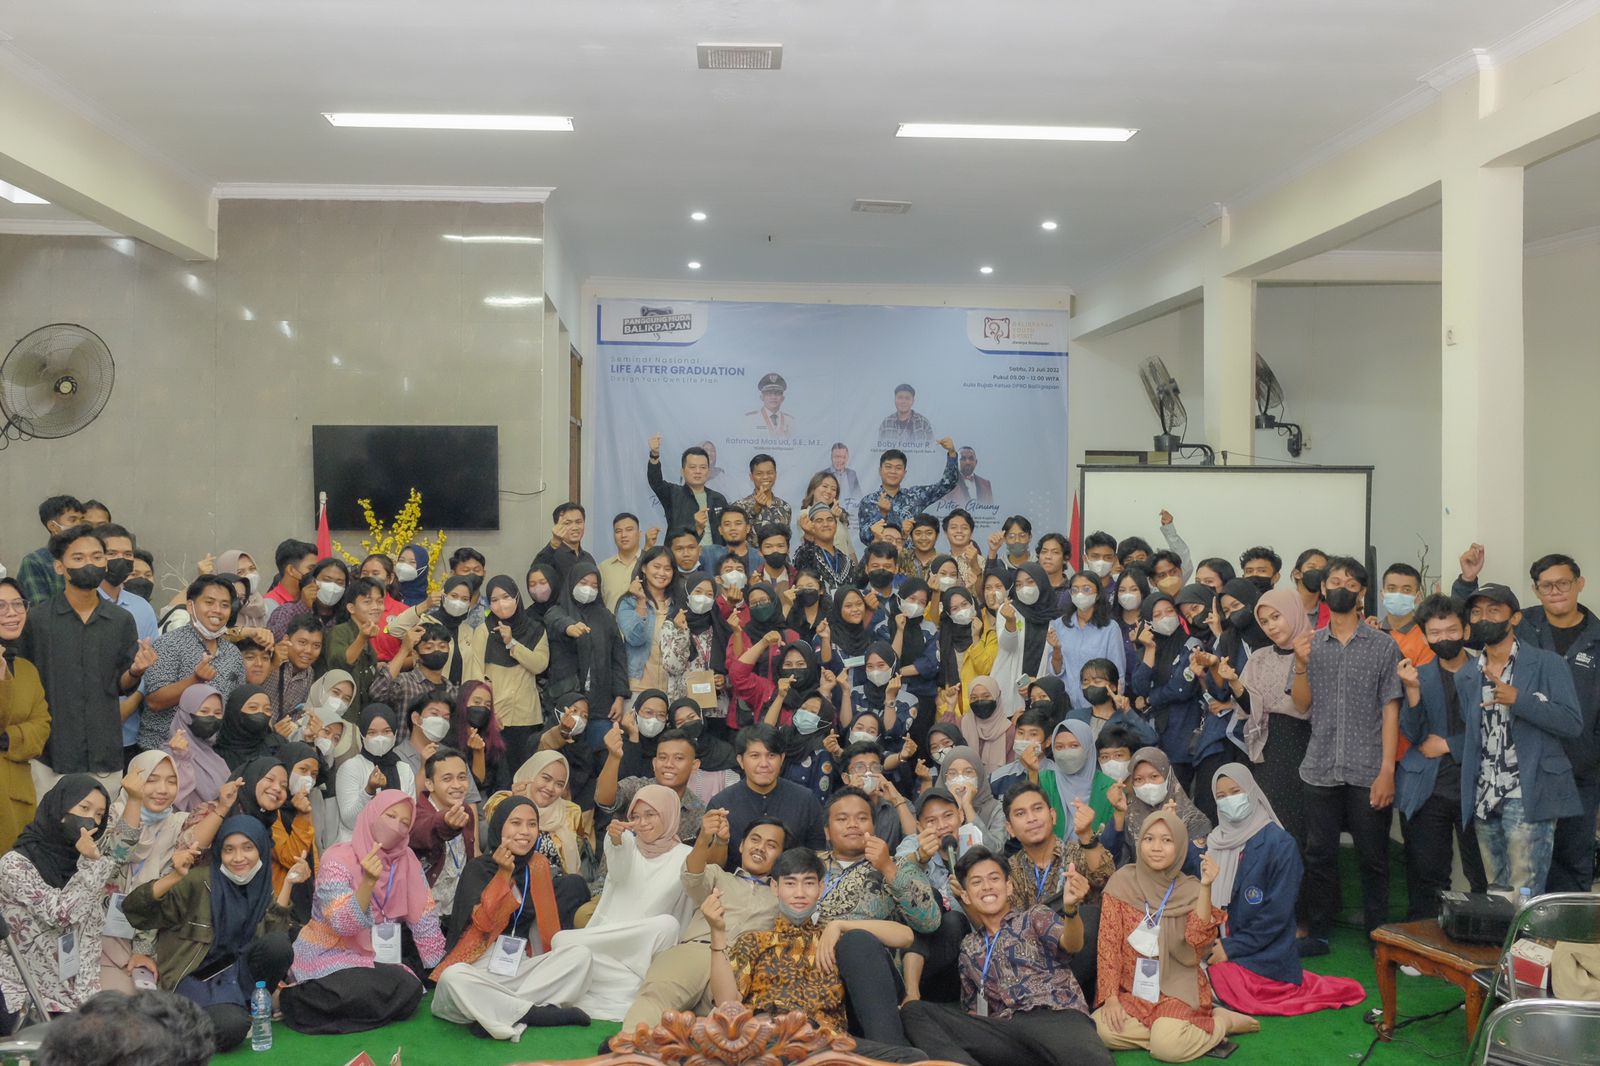 Balikpapan Youth Spirit Gelar Seminar Nasional Bertajuk Design Your Own Life Plan